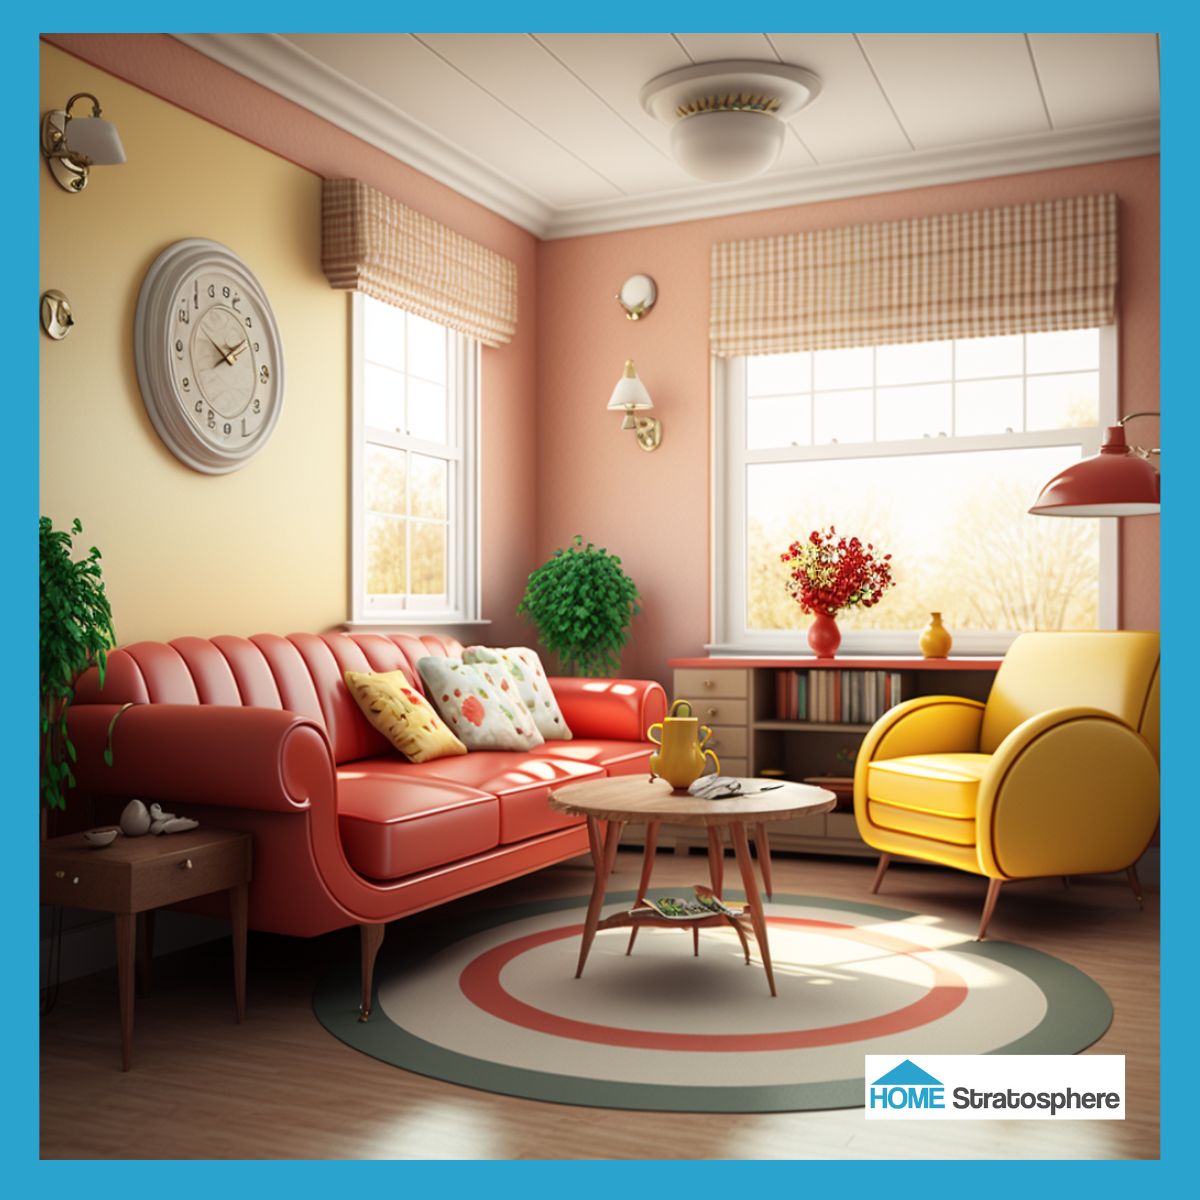 这个有趣的客厅看起来就像童话故事里的一样。家具上柔软、圆润的边缘使空间更有吸引力。虽然空间主要使用红色和黄色，但它结合了更明亮的色调和粉彩，使房间更有趣。迷人的装饰物品，如花卉抱枕，是完美的点睛之笔。